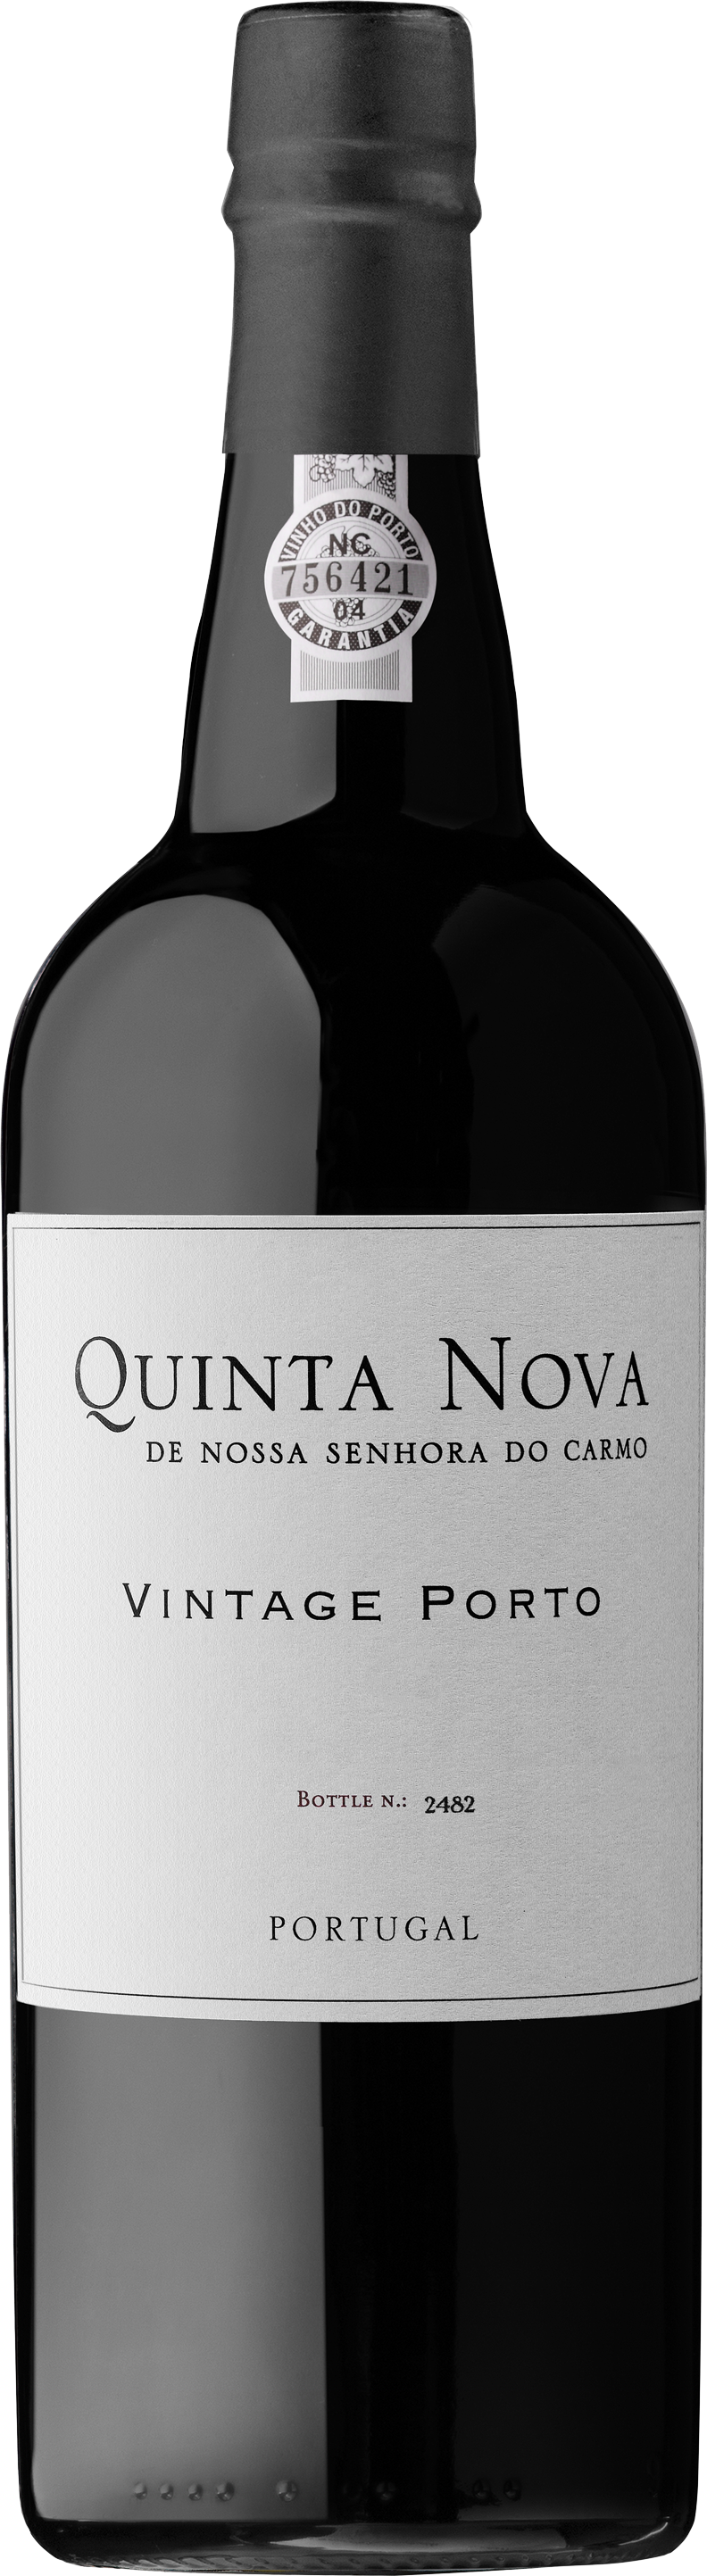 Quinta Nova Vintage Porto 2000